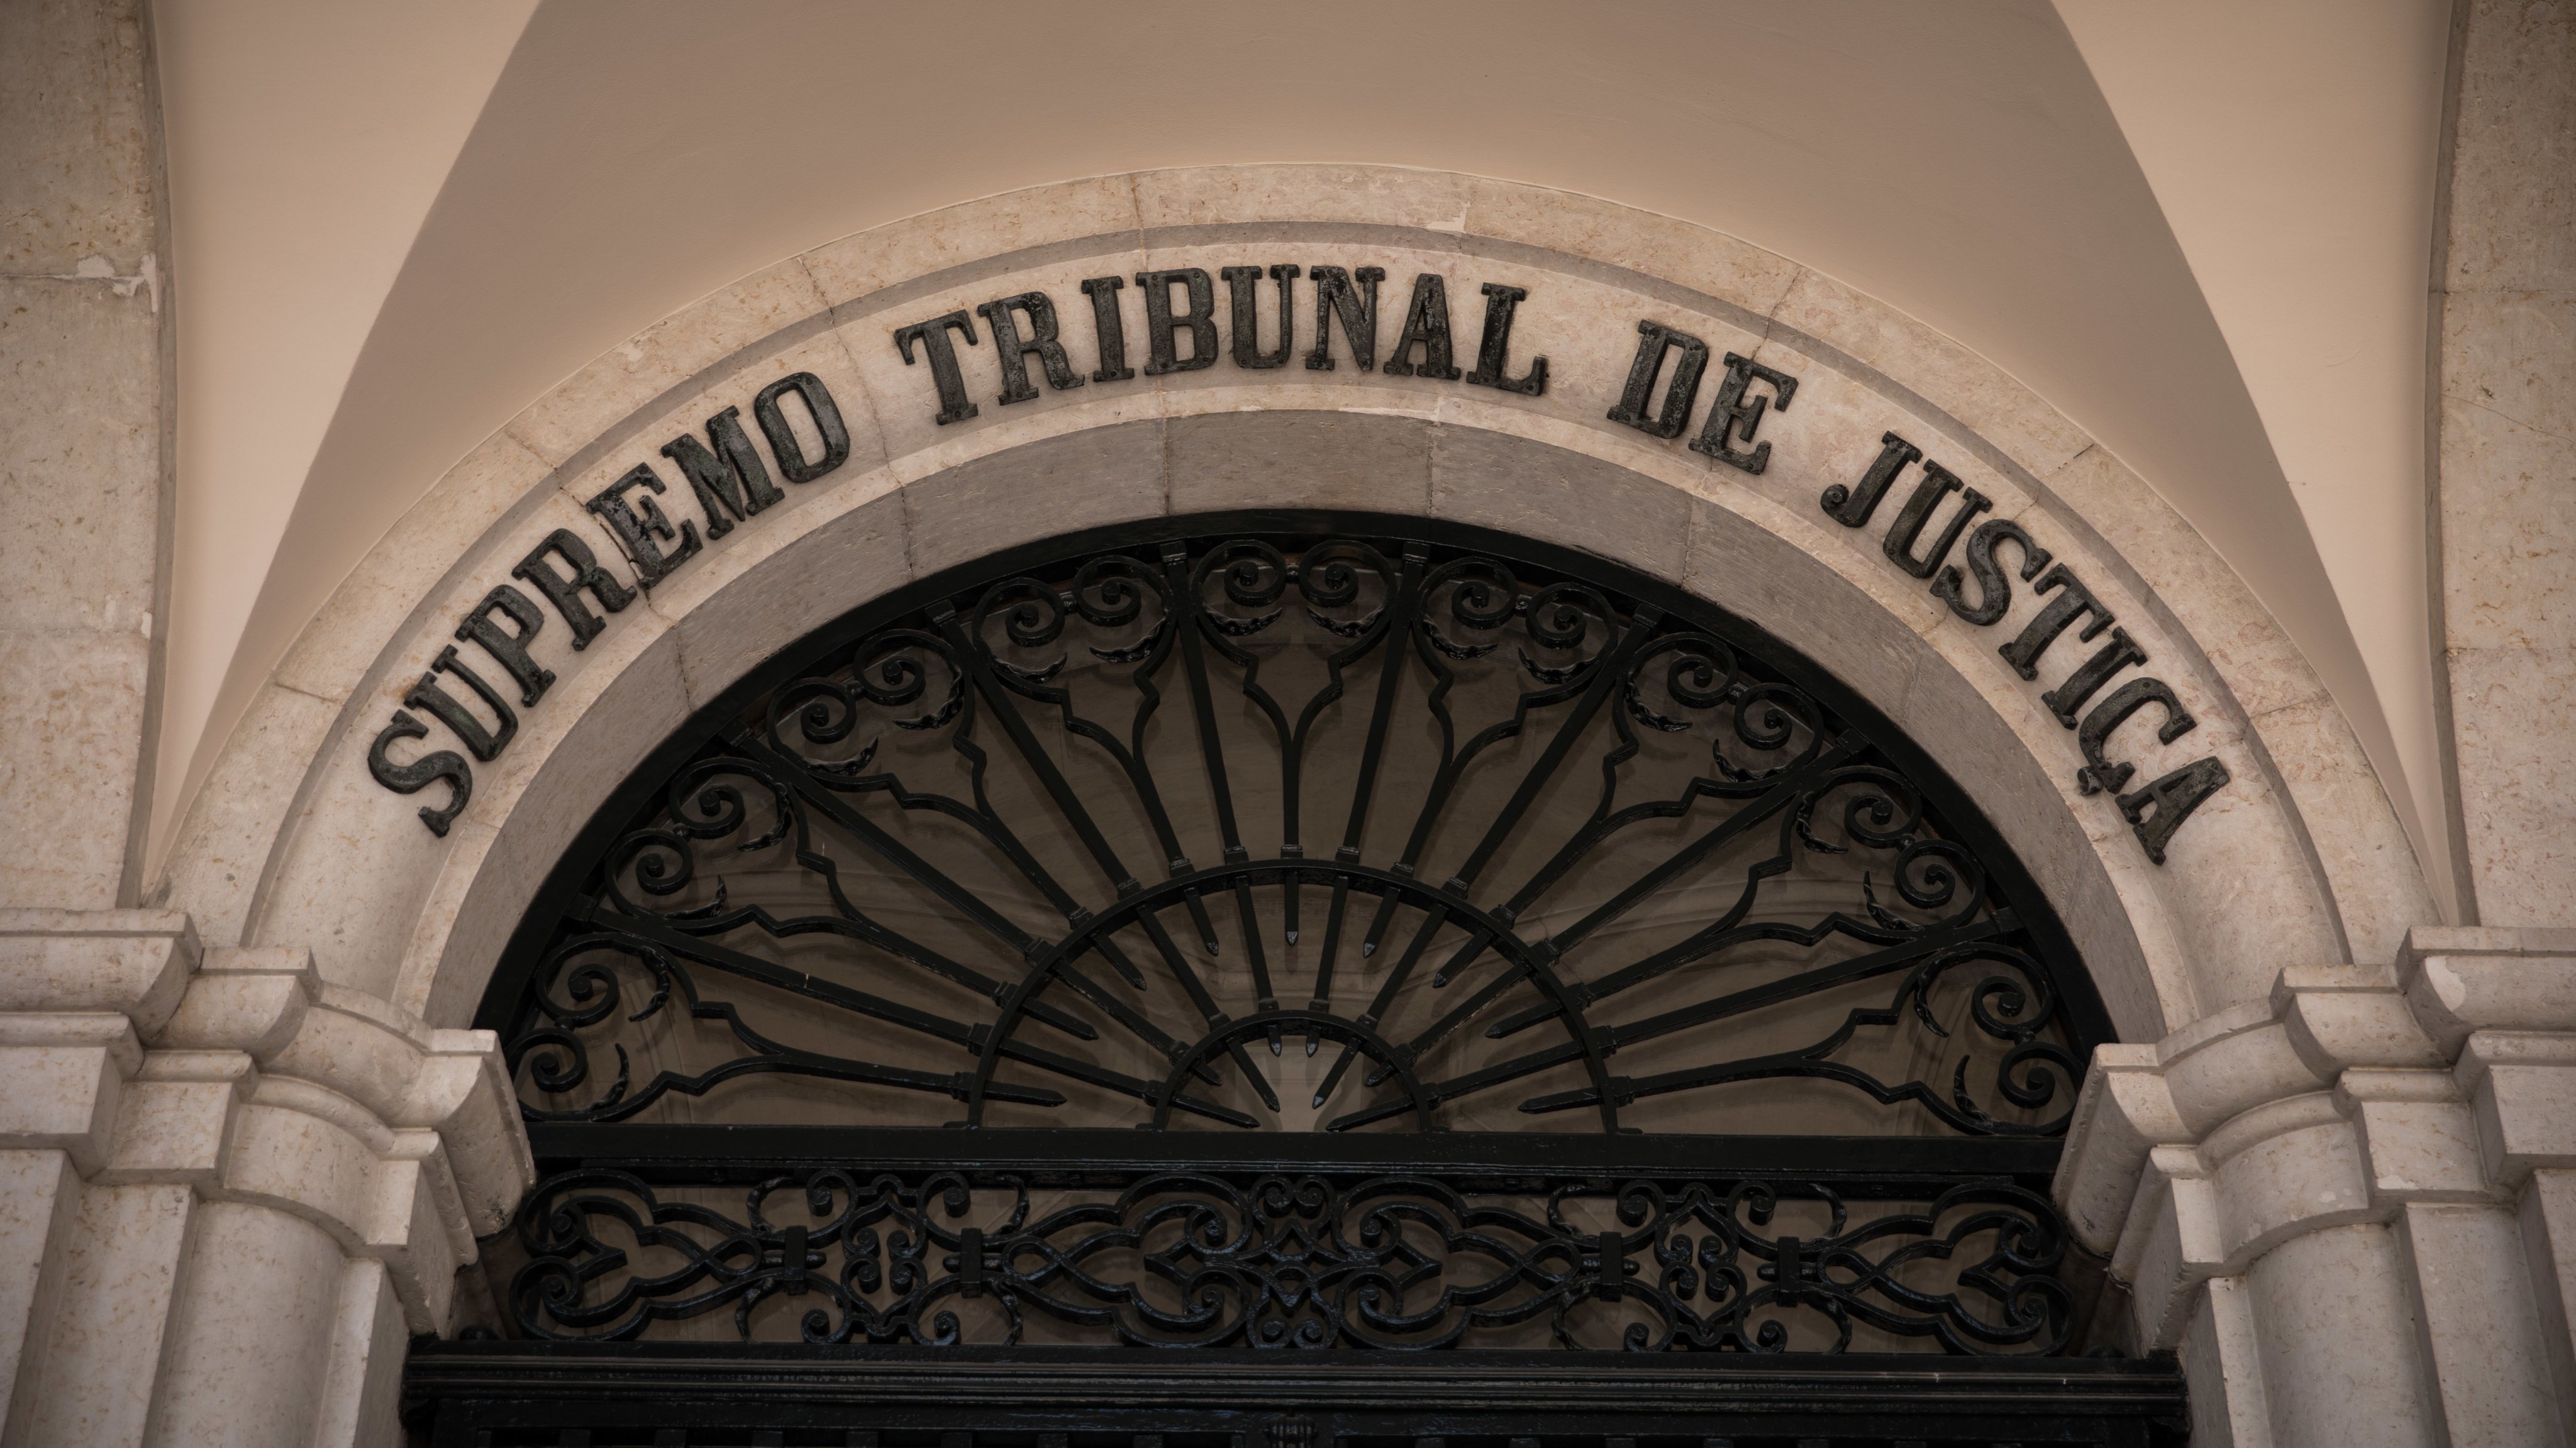 O Supremo Tribunal de Justiça analisou o regulamento que dita que os juízes devem apresentar a declaração de rendimentos após uma queixa apresentada pela Associação Sindical de Juízes Portugueses